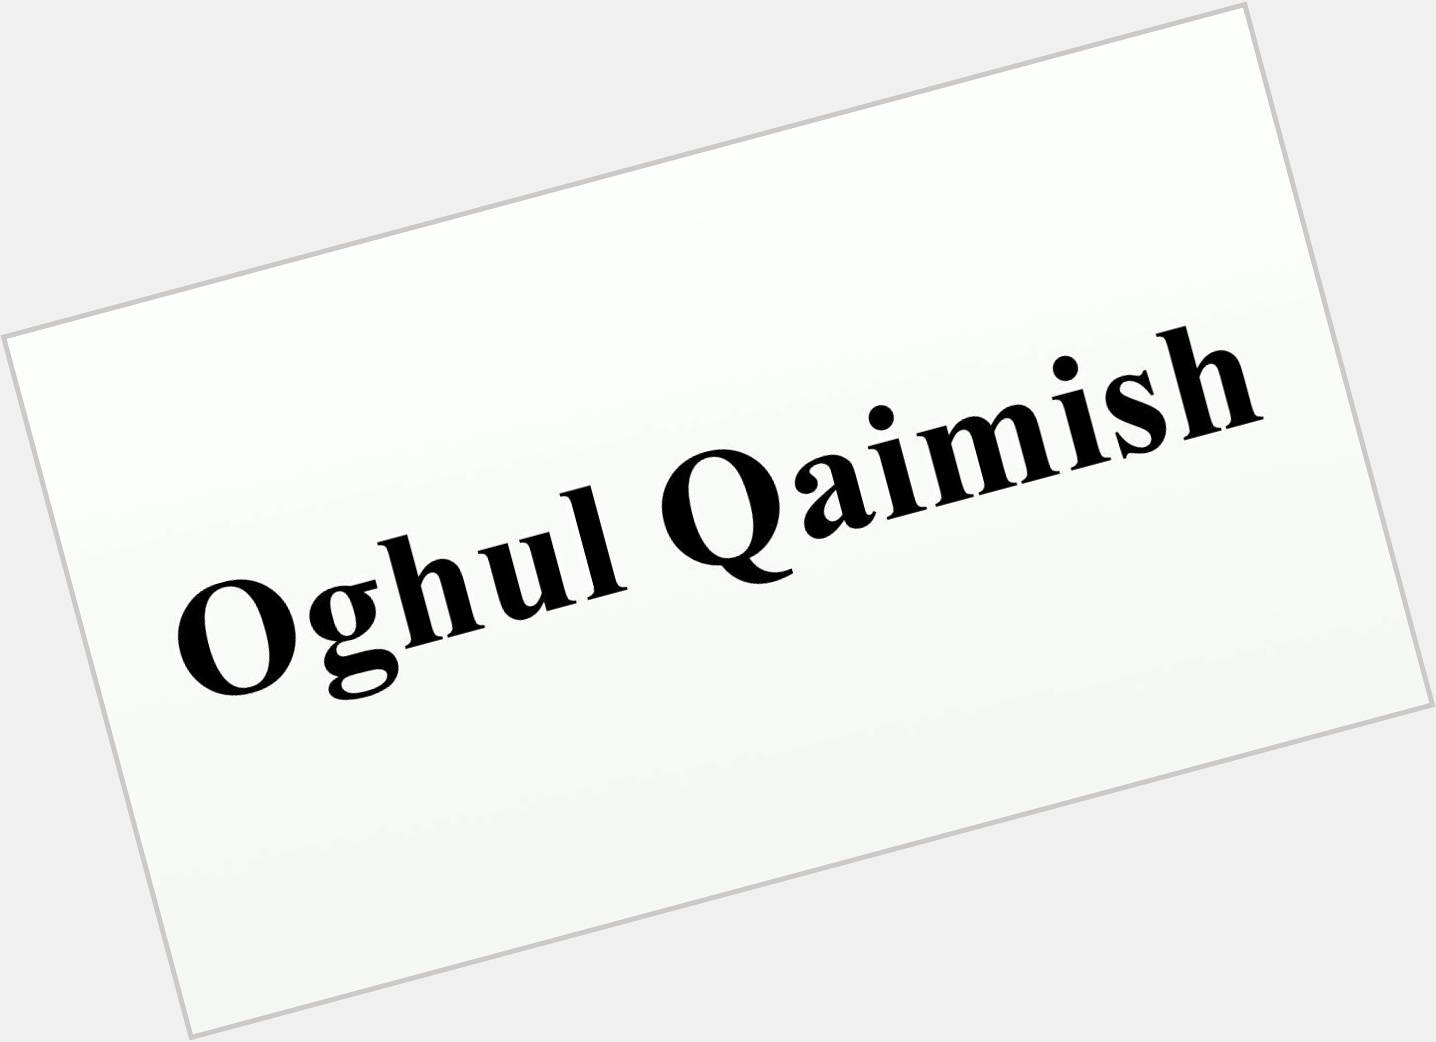 Oghul Qaimish  